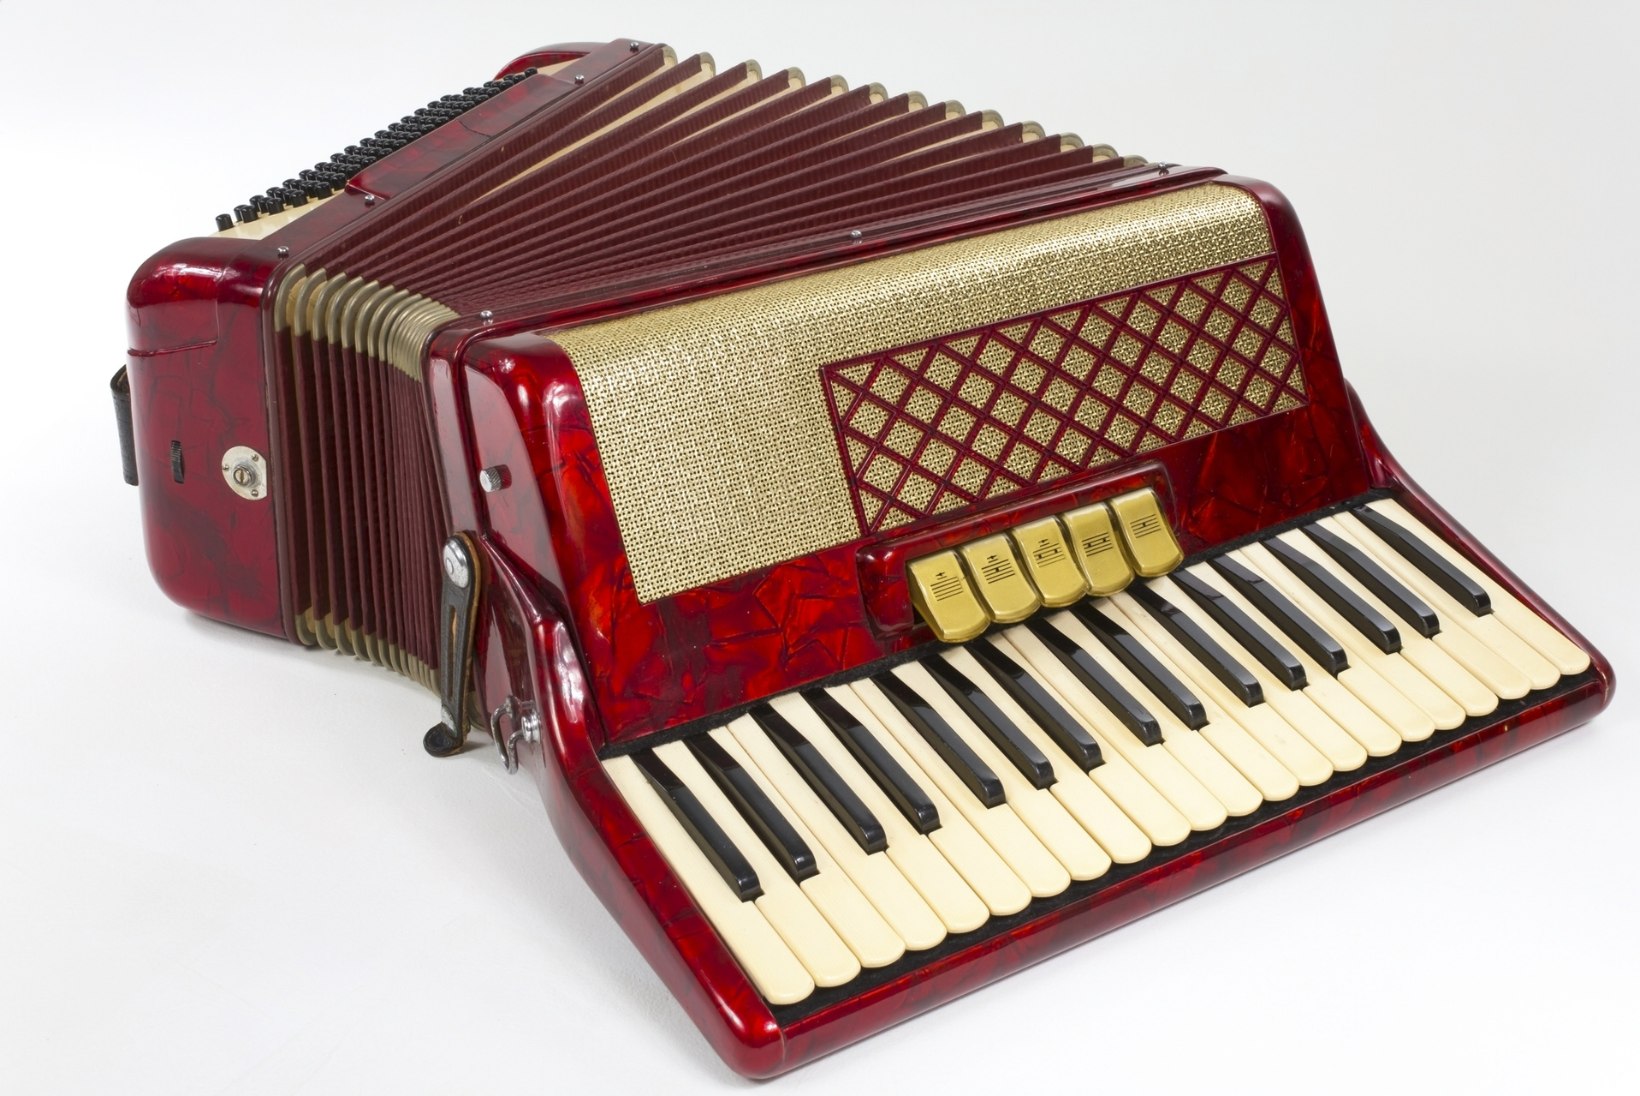 RAHA PÖÖNINGUL | Vana akordioni eest võib saada kuni 1400 eurot!